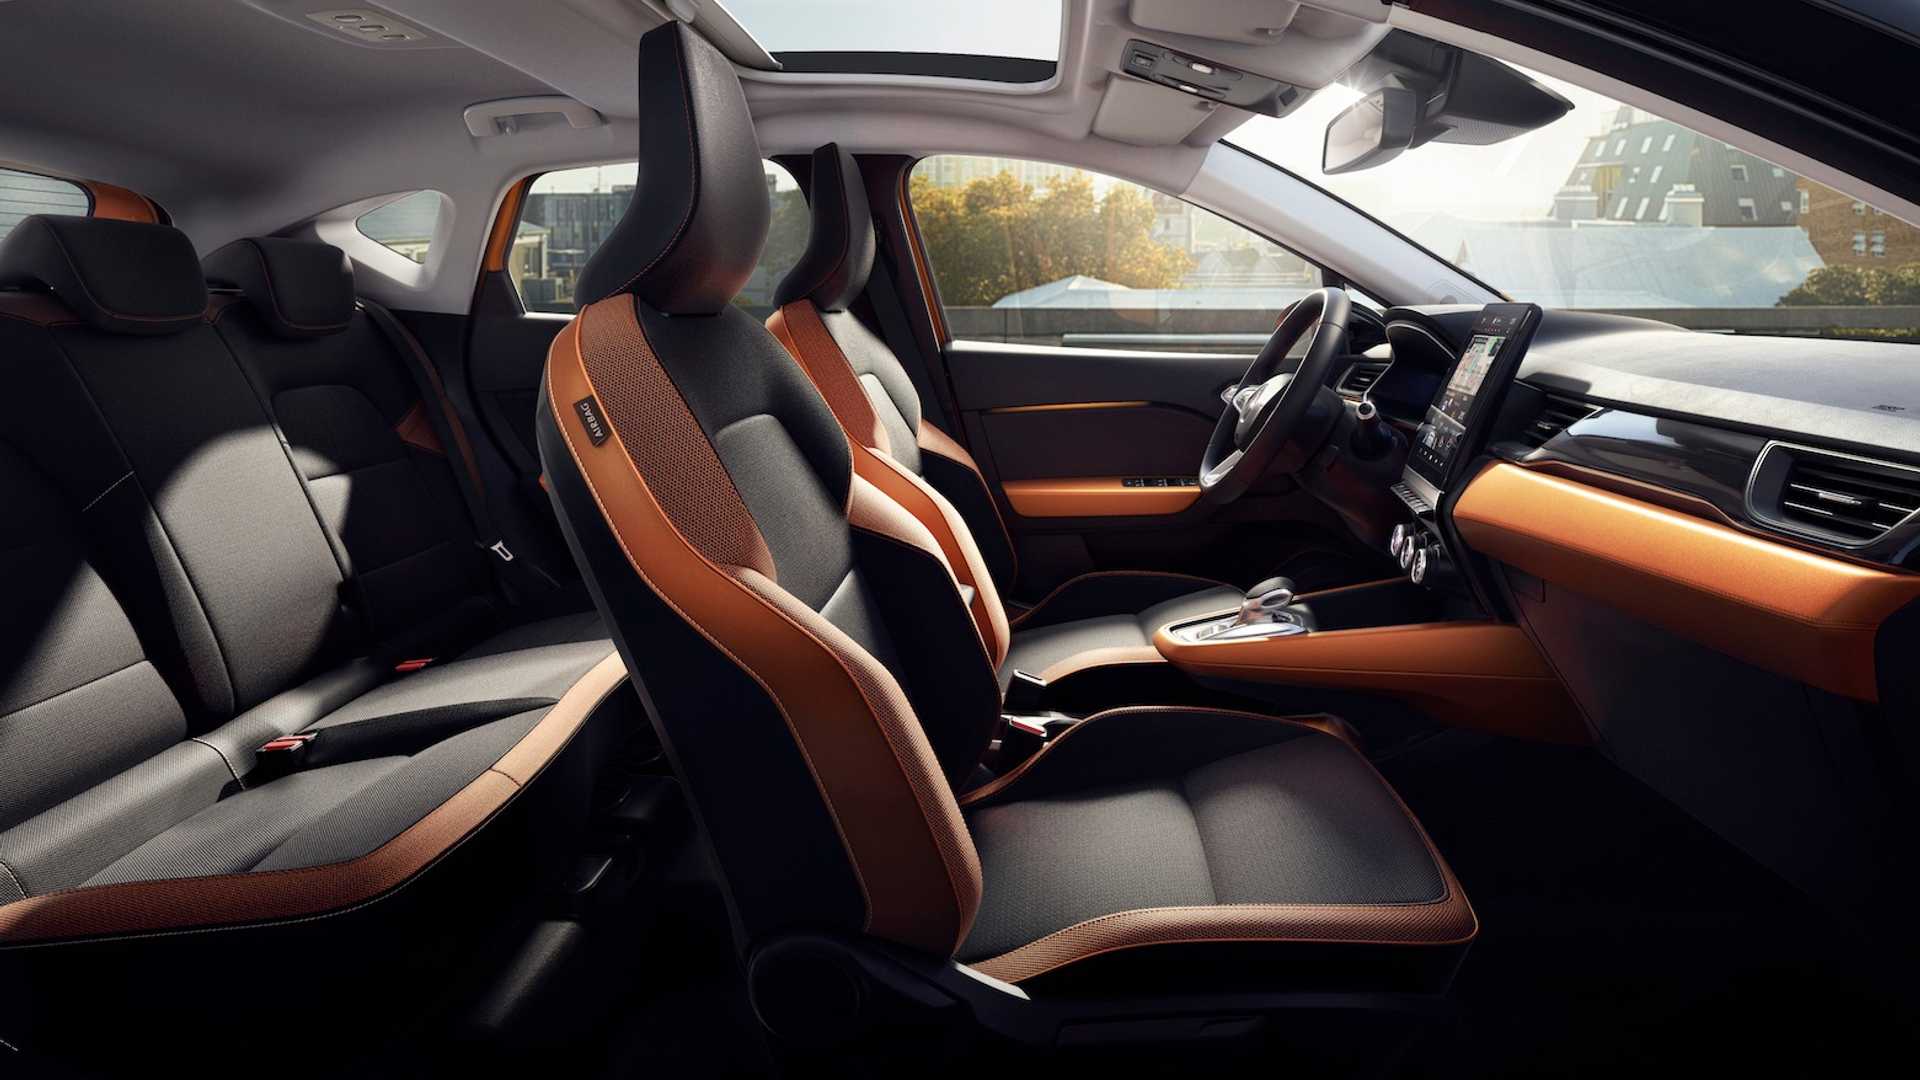 Renault Captur interior - Seats